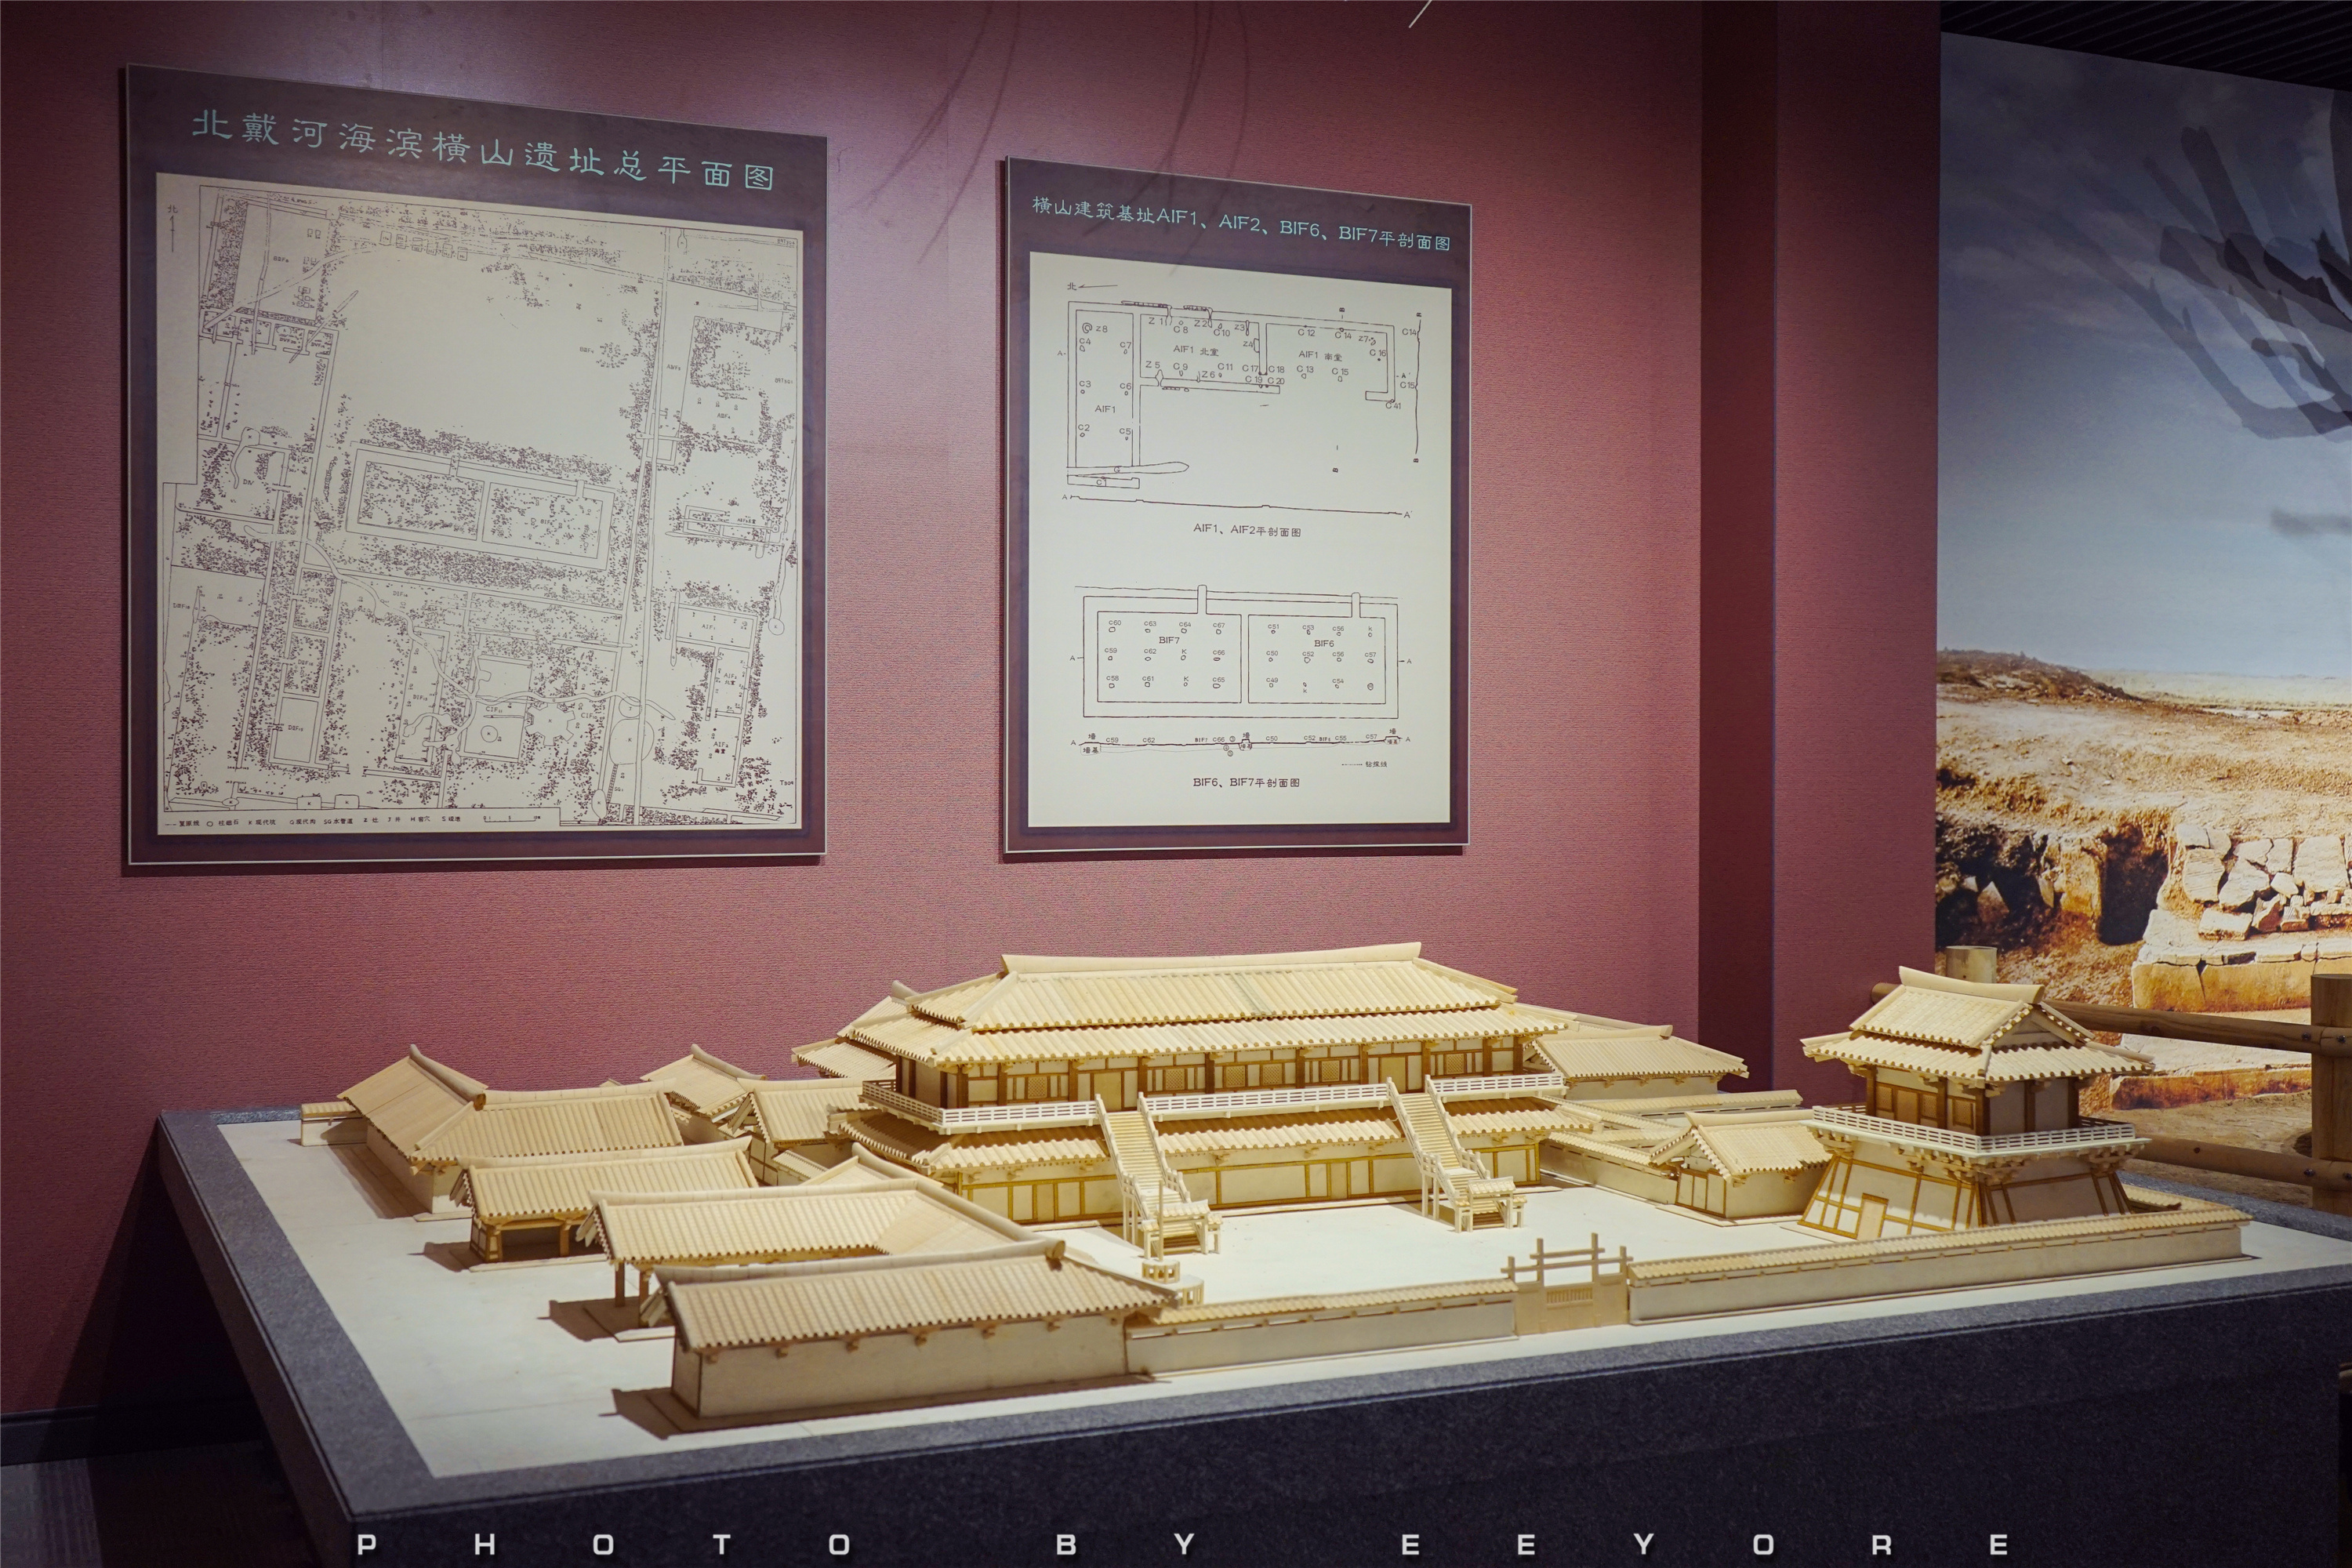 在秦皇岛秦行宫遗址博物馆外,你依旧能够看到保留下的宫殿遗址区